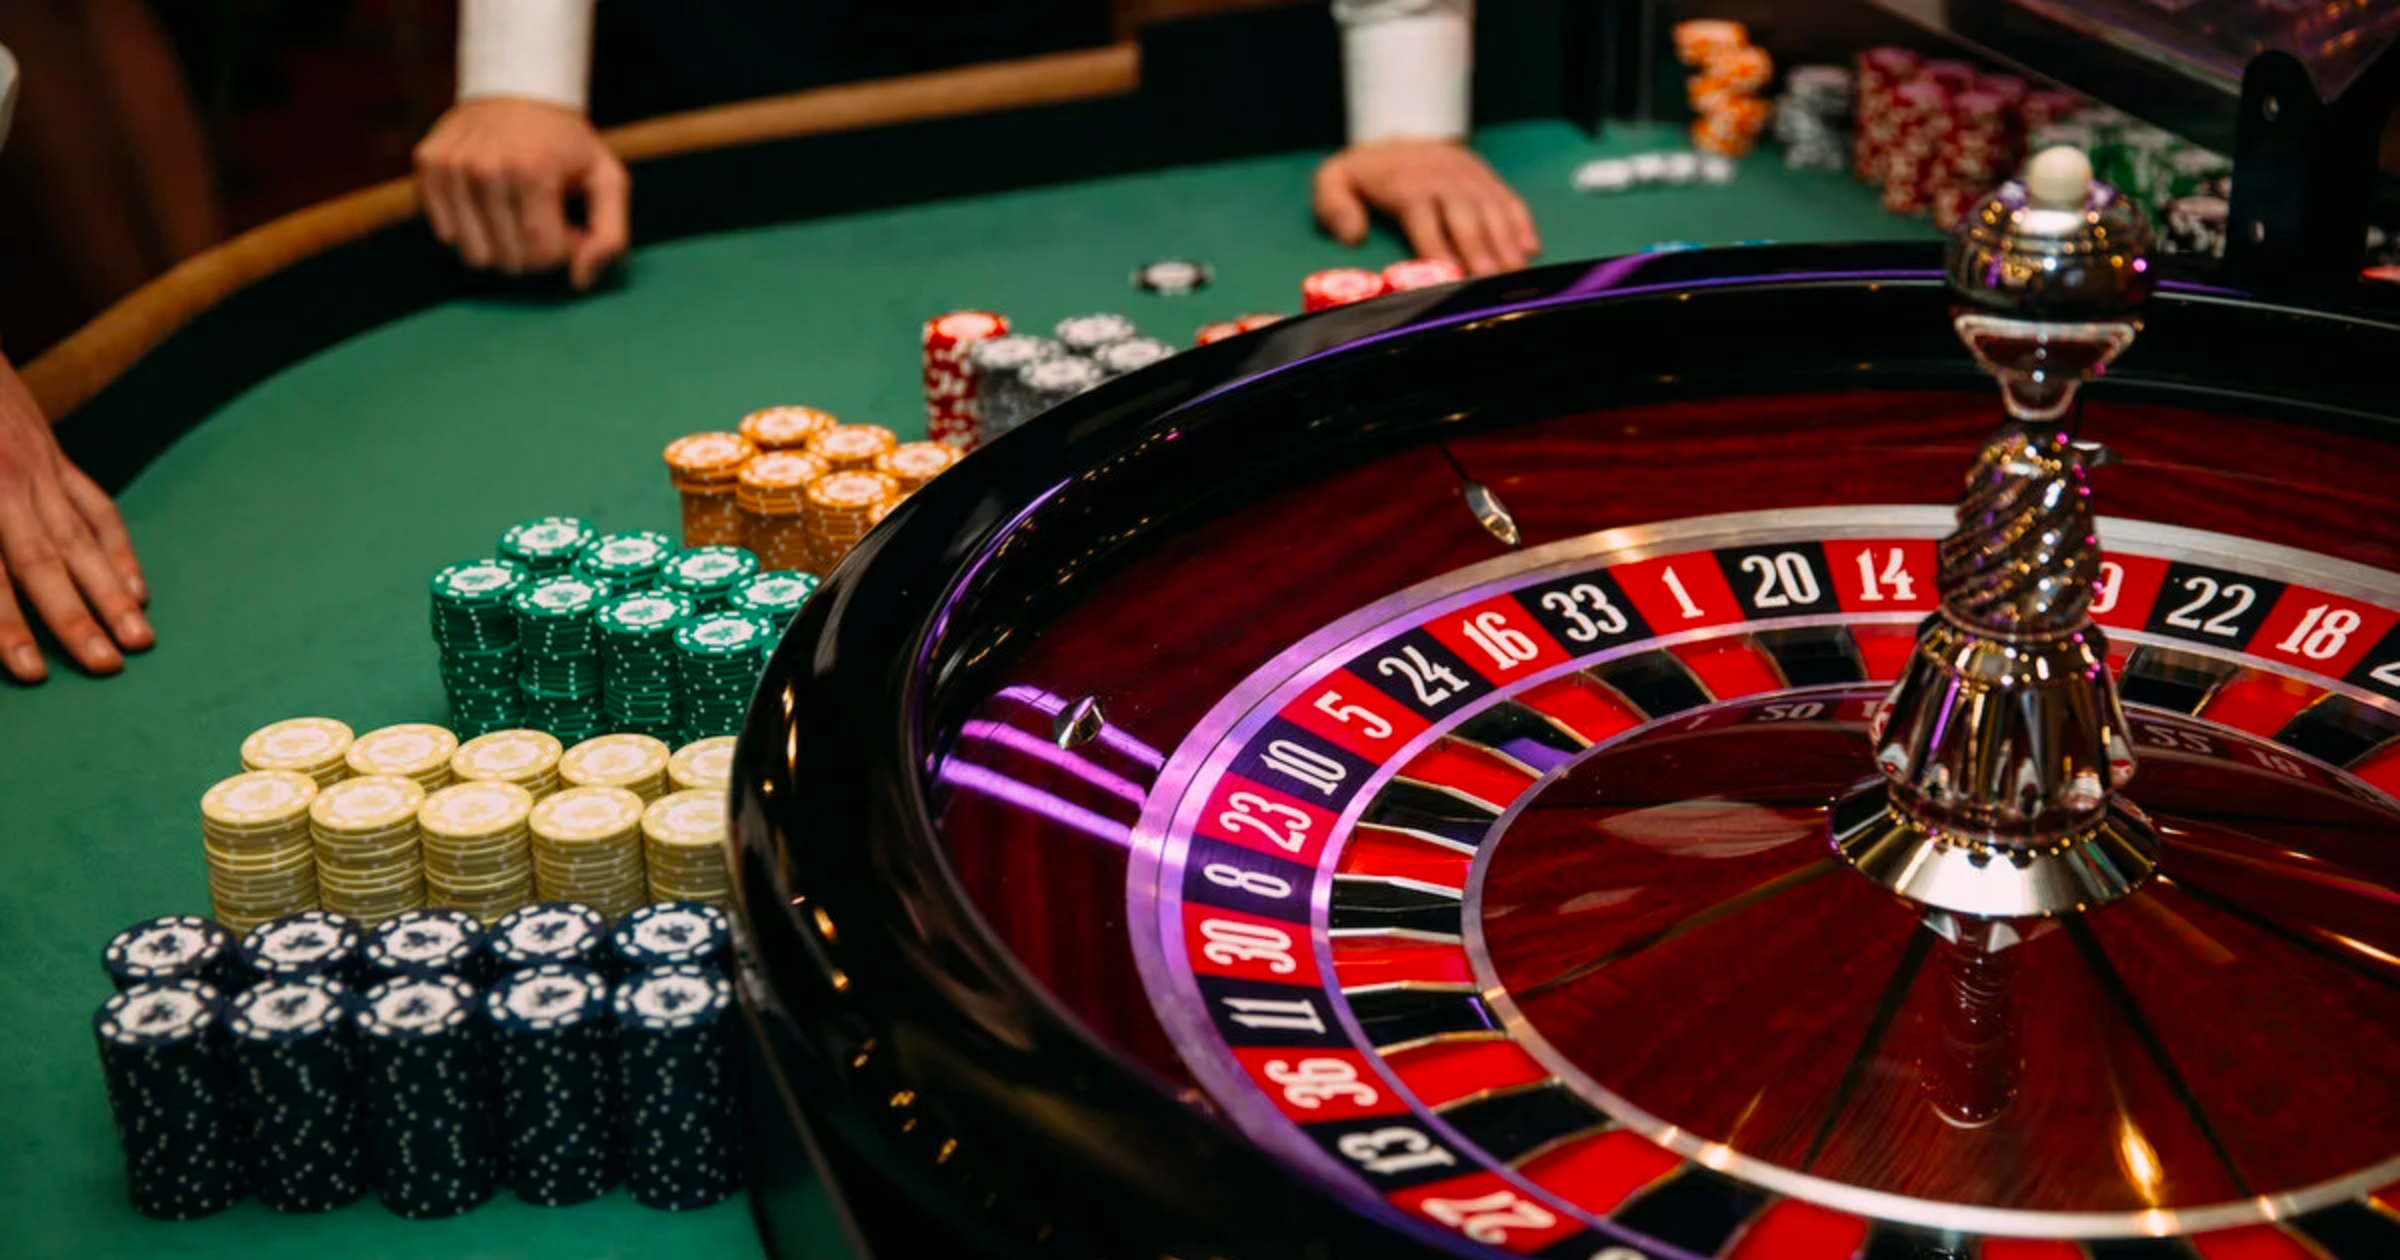 МВД уволило 17 сотрудников за игры в казино